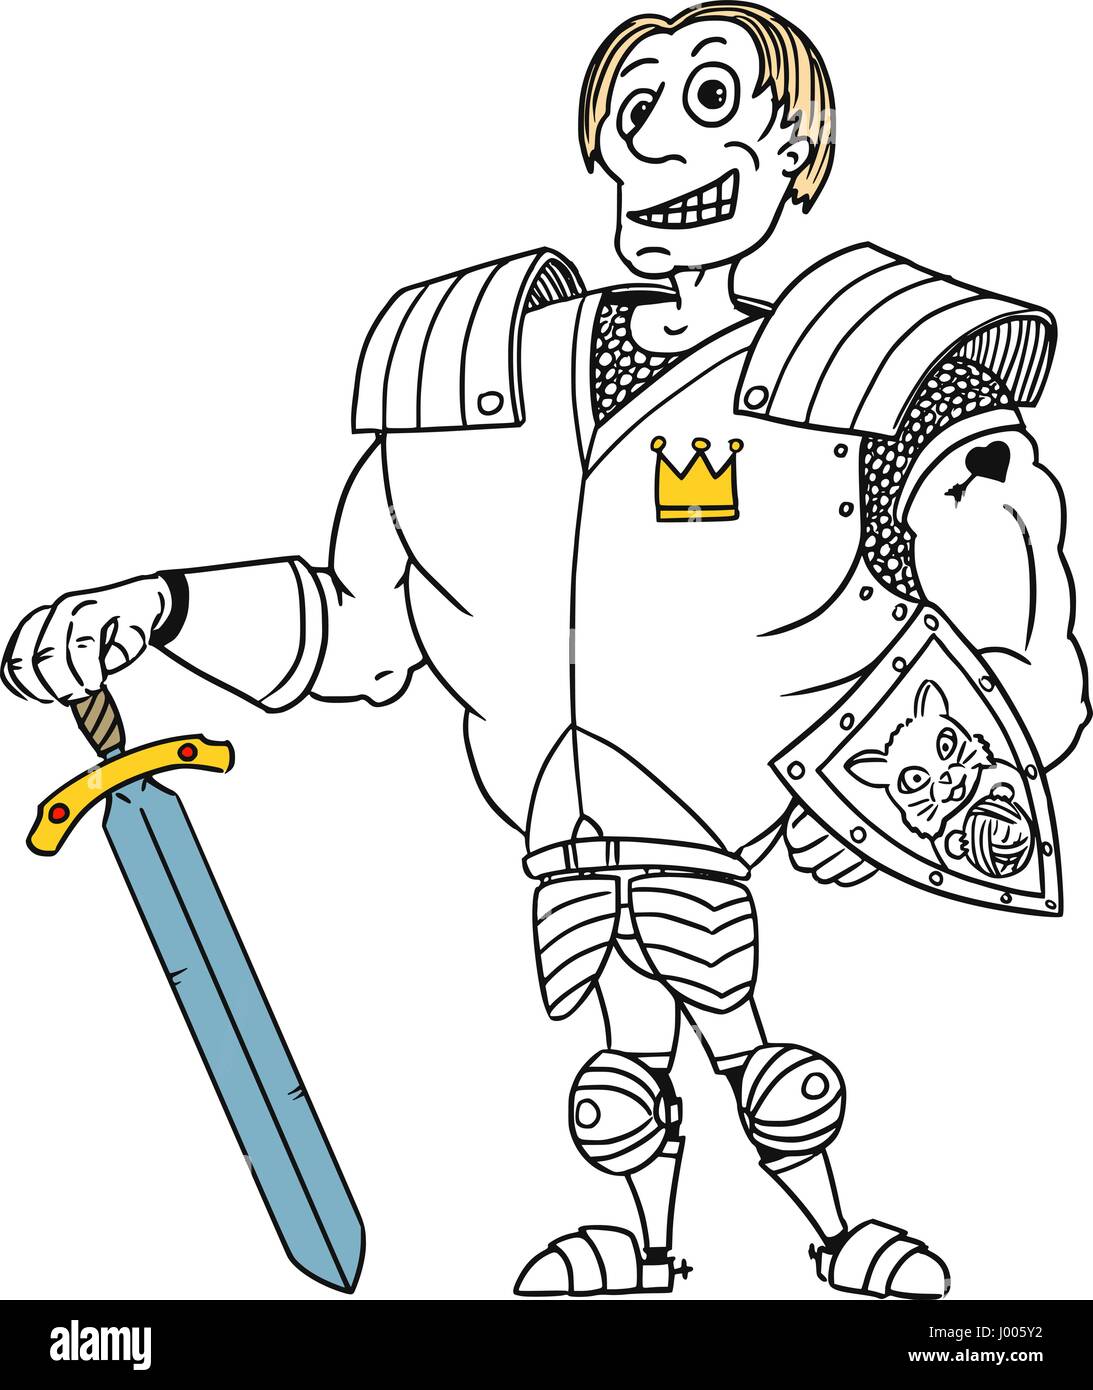 Cartoon vectores reales medievales fantasía antiguo Príncipe Encantador héroe caballero con armadura, espada, escudo y sonrisa Ilustración del Vector